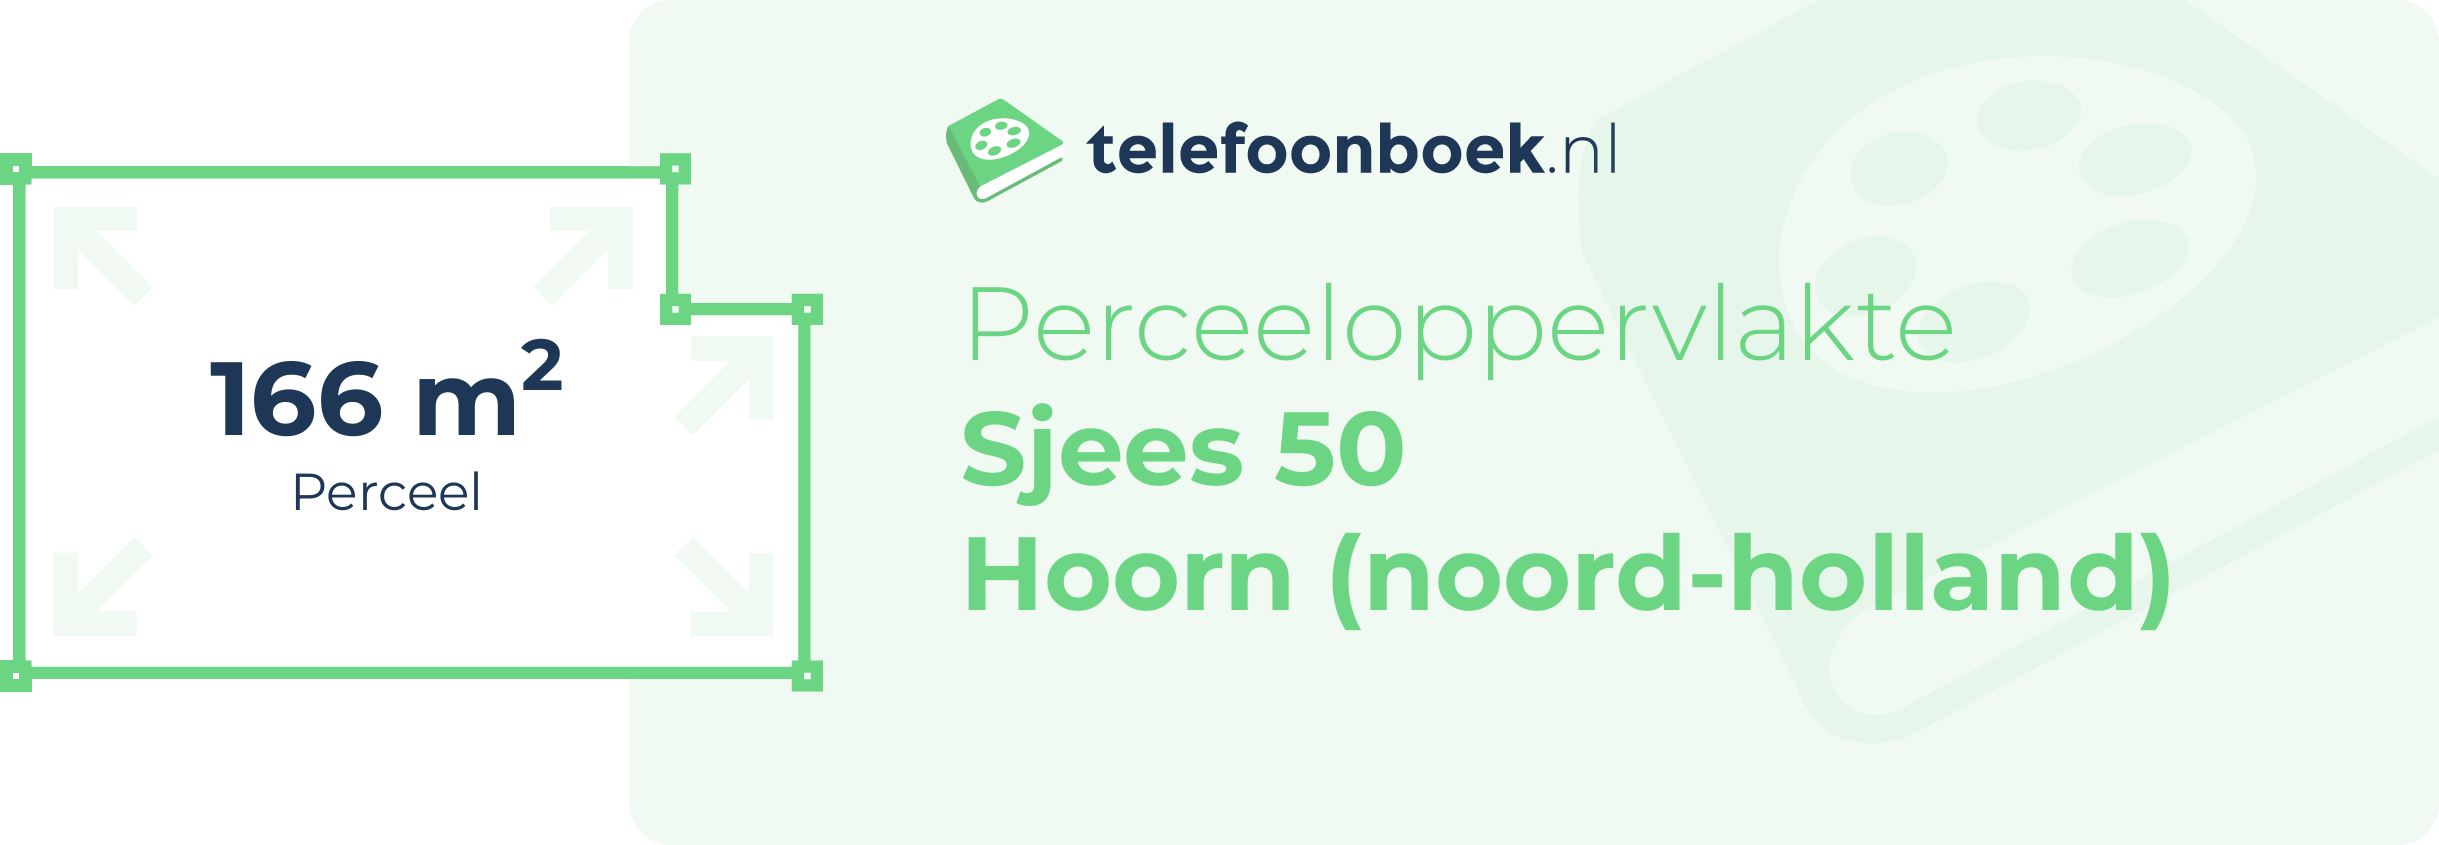 Perceeloppervlakte Sjees 50 Hoorn (Noord-Holland)